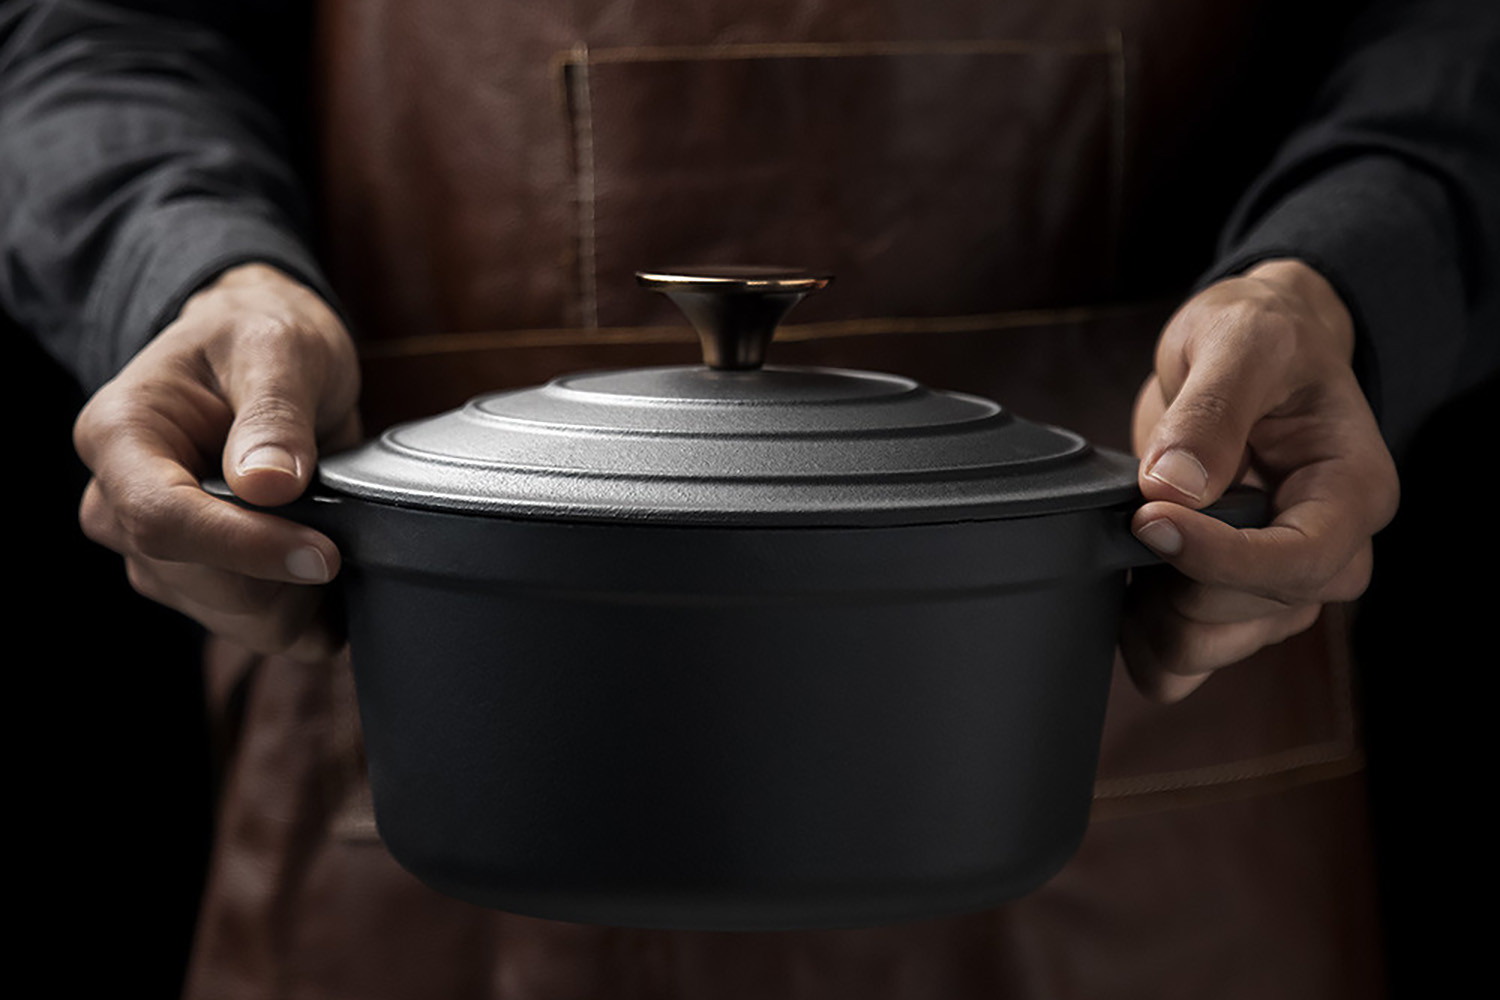 https://www.cielo.co.za/121772-large_default/nouvelle-cast-iron-8-piece-cookware-set-matt-black.jpg